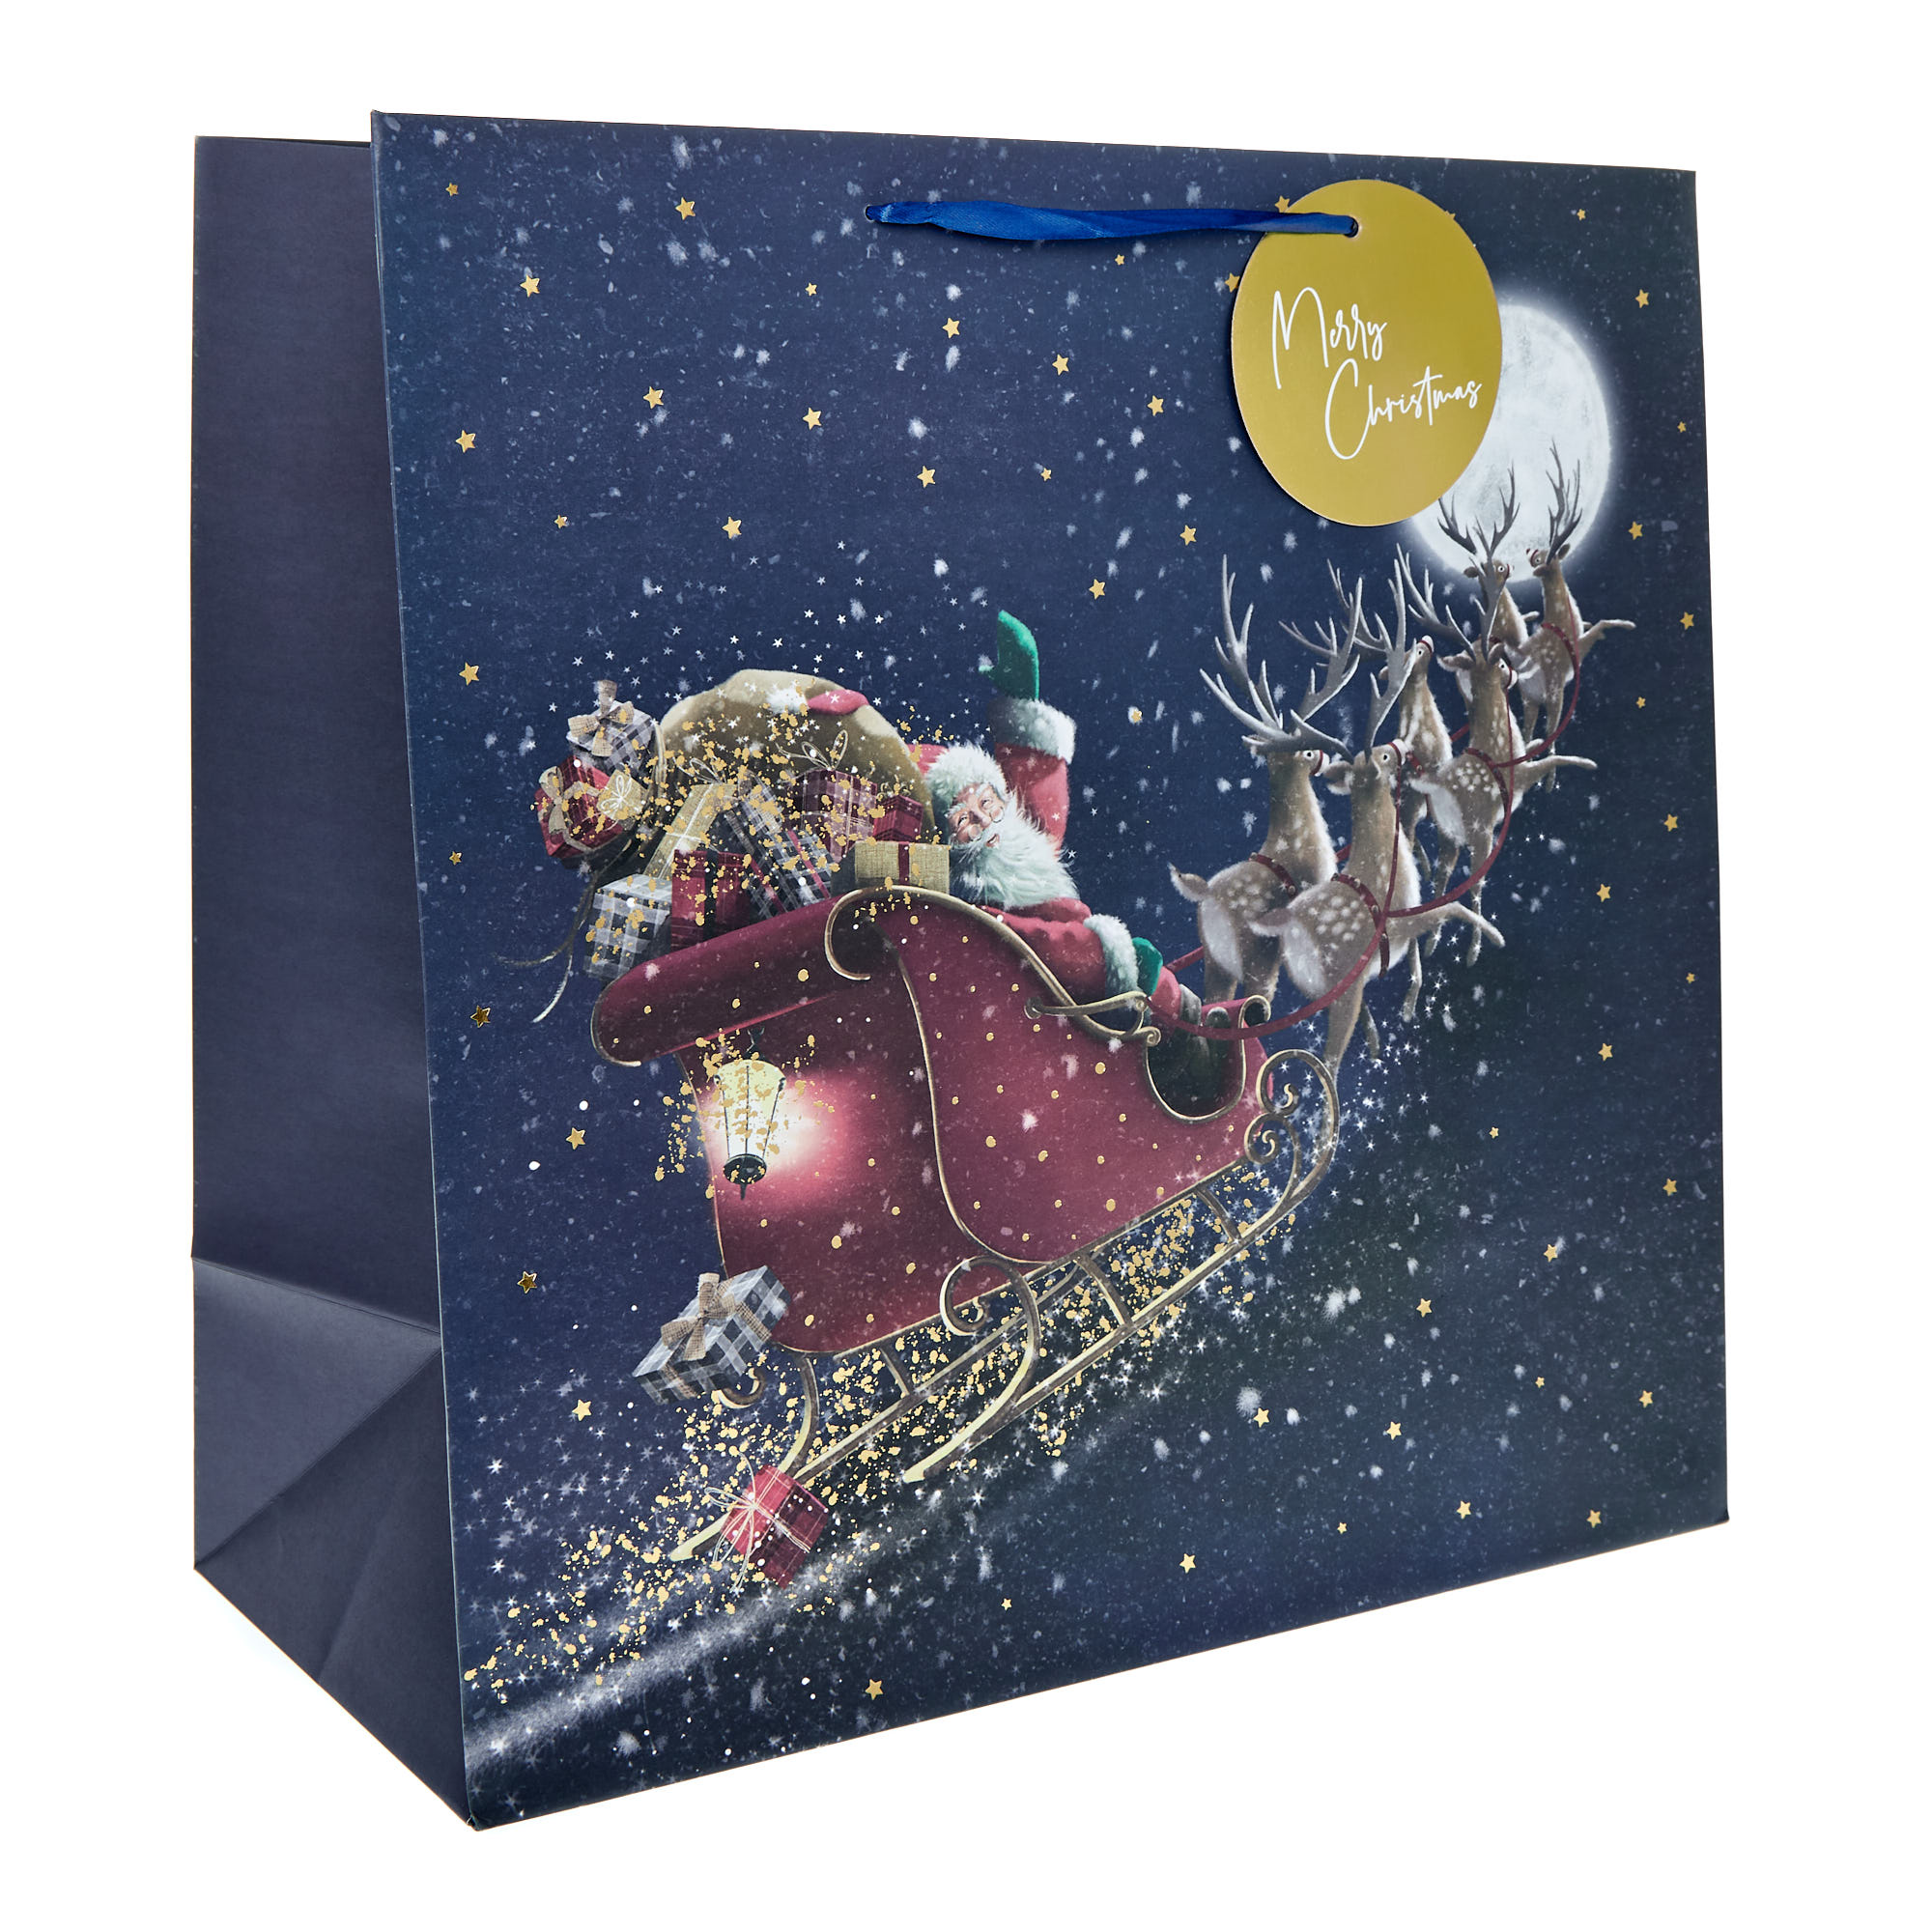 Giant Square Santa's Sleigh Christmas Gift Bag